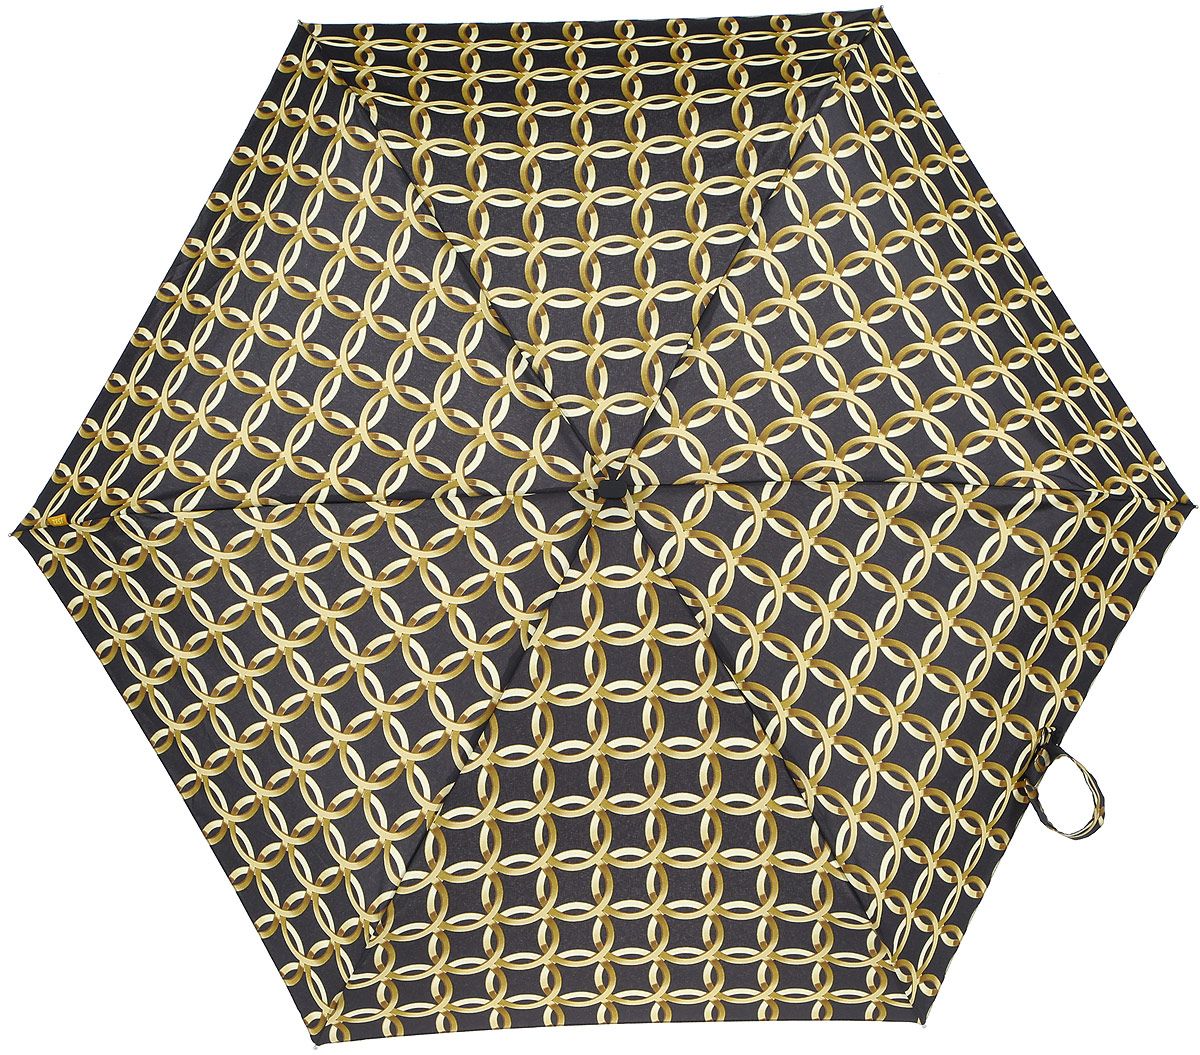 Зонт женский Zest, механический, 5 сложений, цвет: черный, золотой. 25518-262